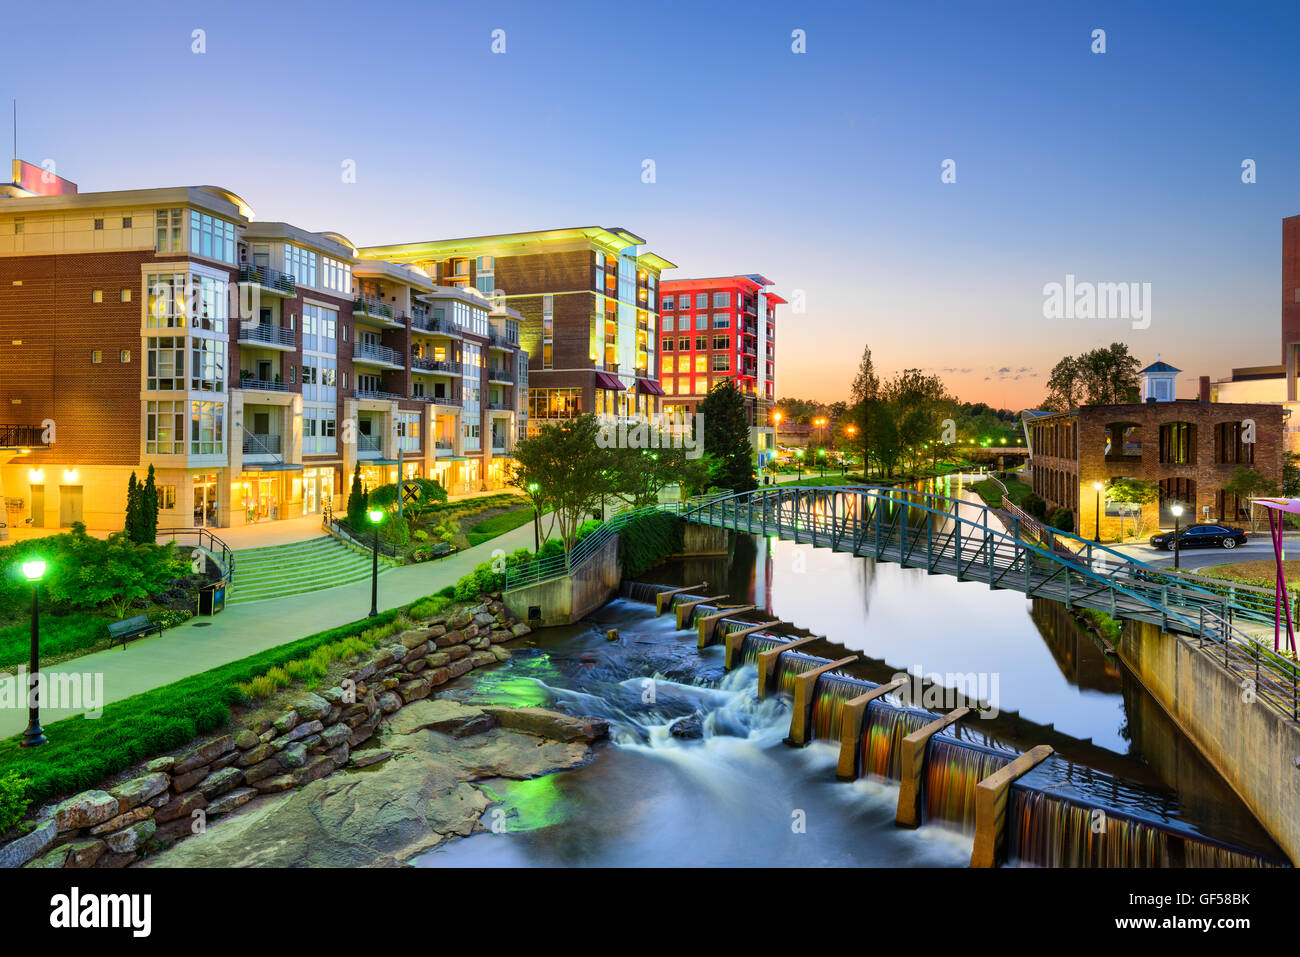 Greenville, Carolina del Sur, EE.UU. el centro de ciudad. Foto de stock